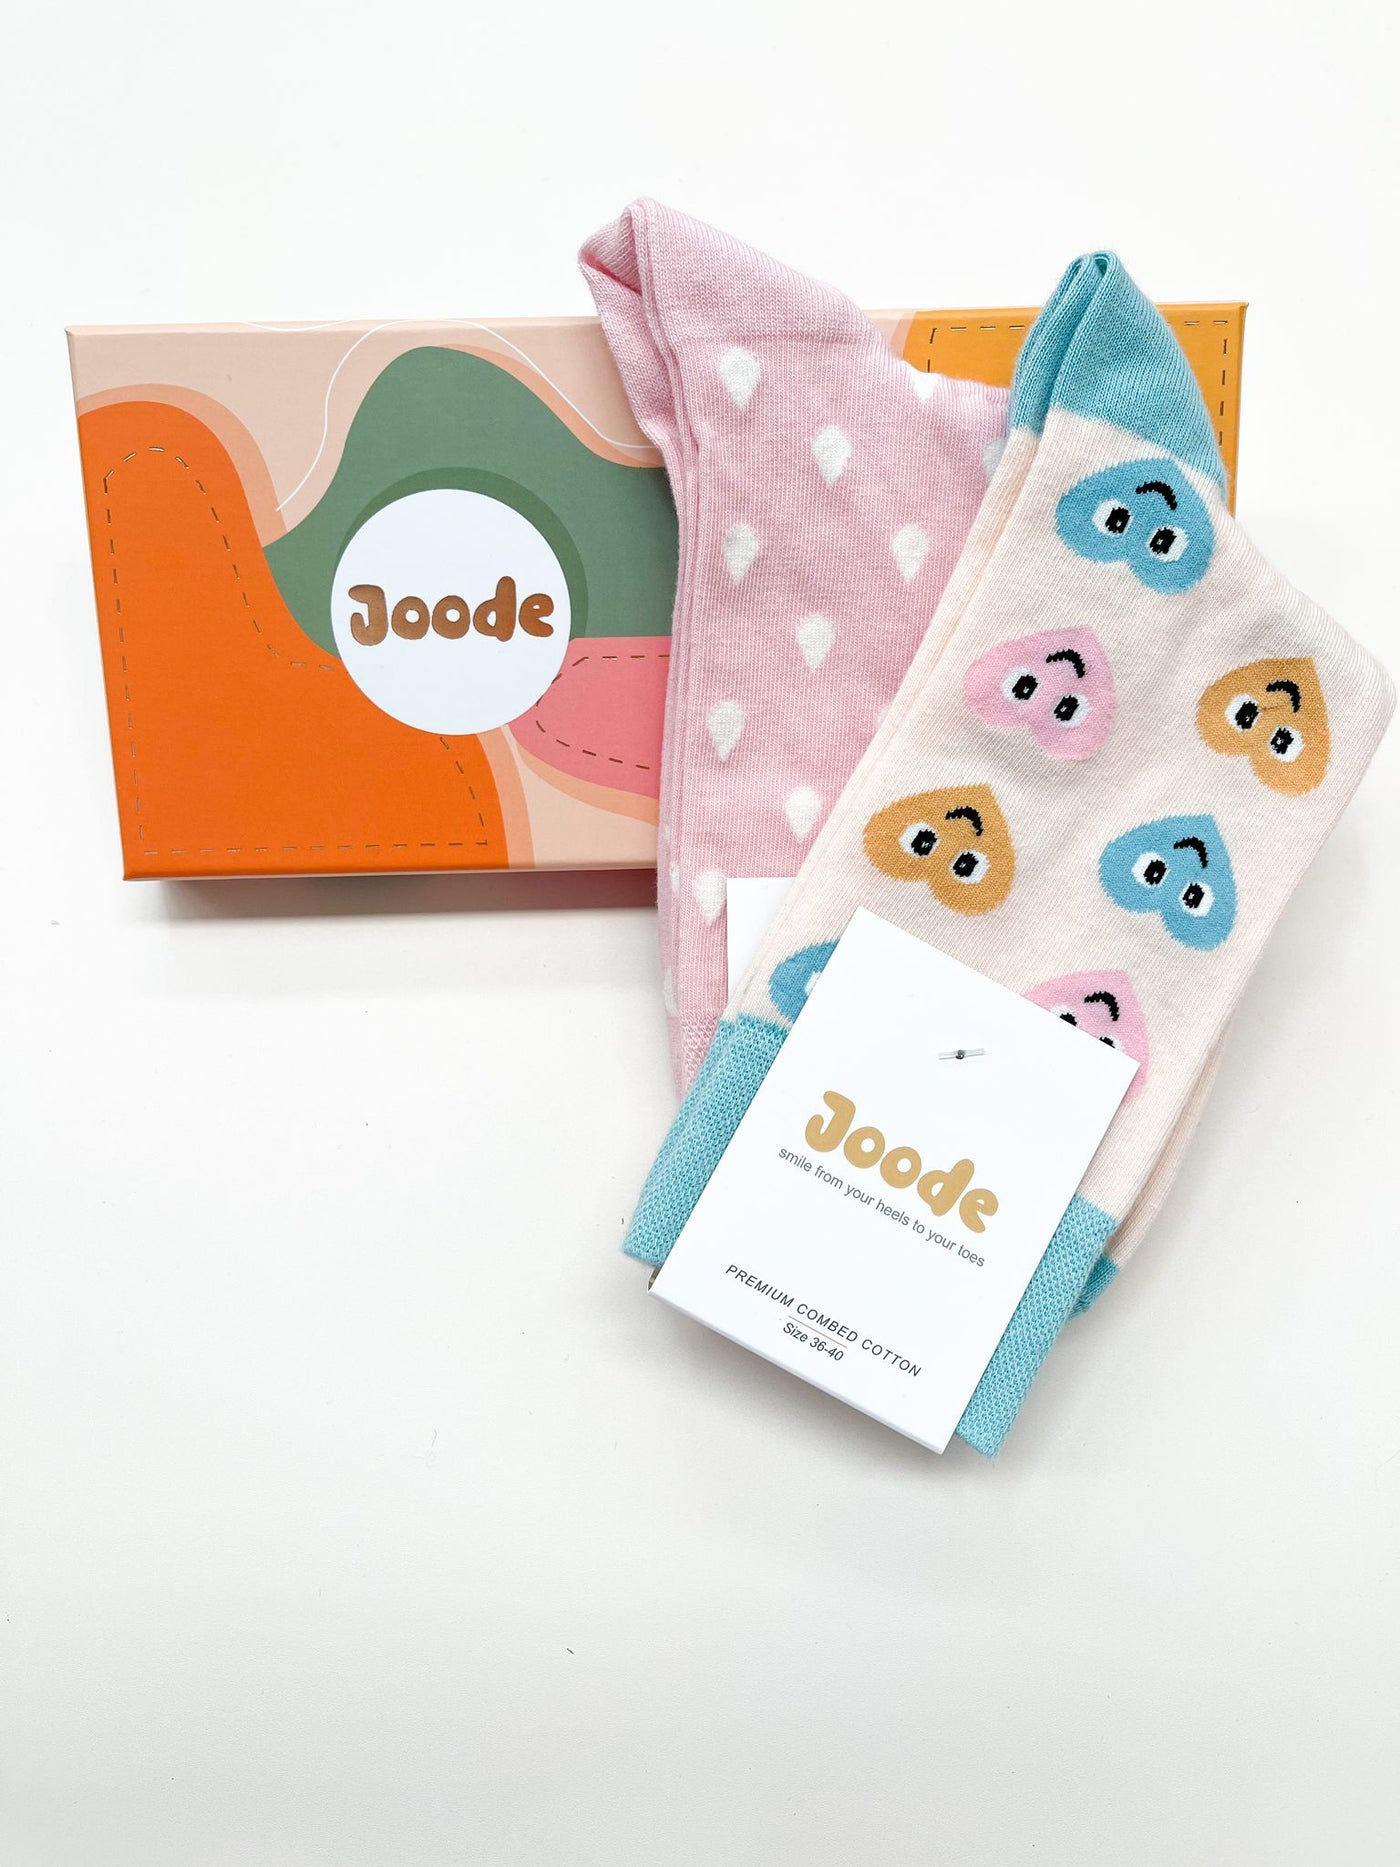 Joode Women's Socks Gift Box - Feel Better Box